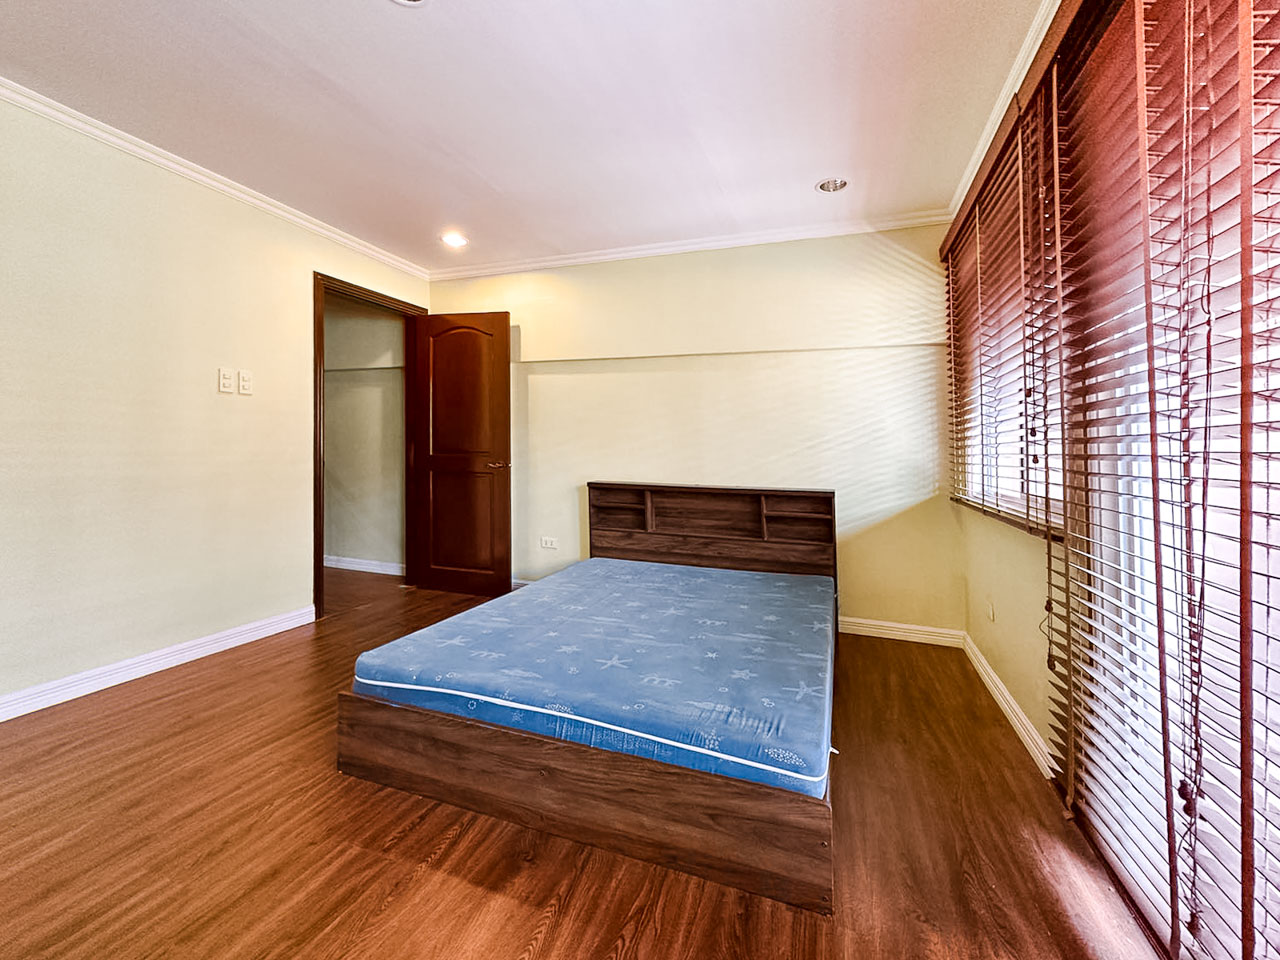 SRBOEP1 3 Bedrooms House for Sale in Lahug Cebu - 17